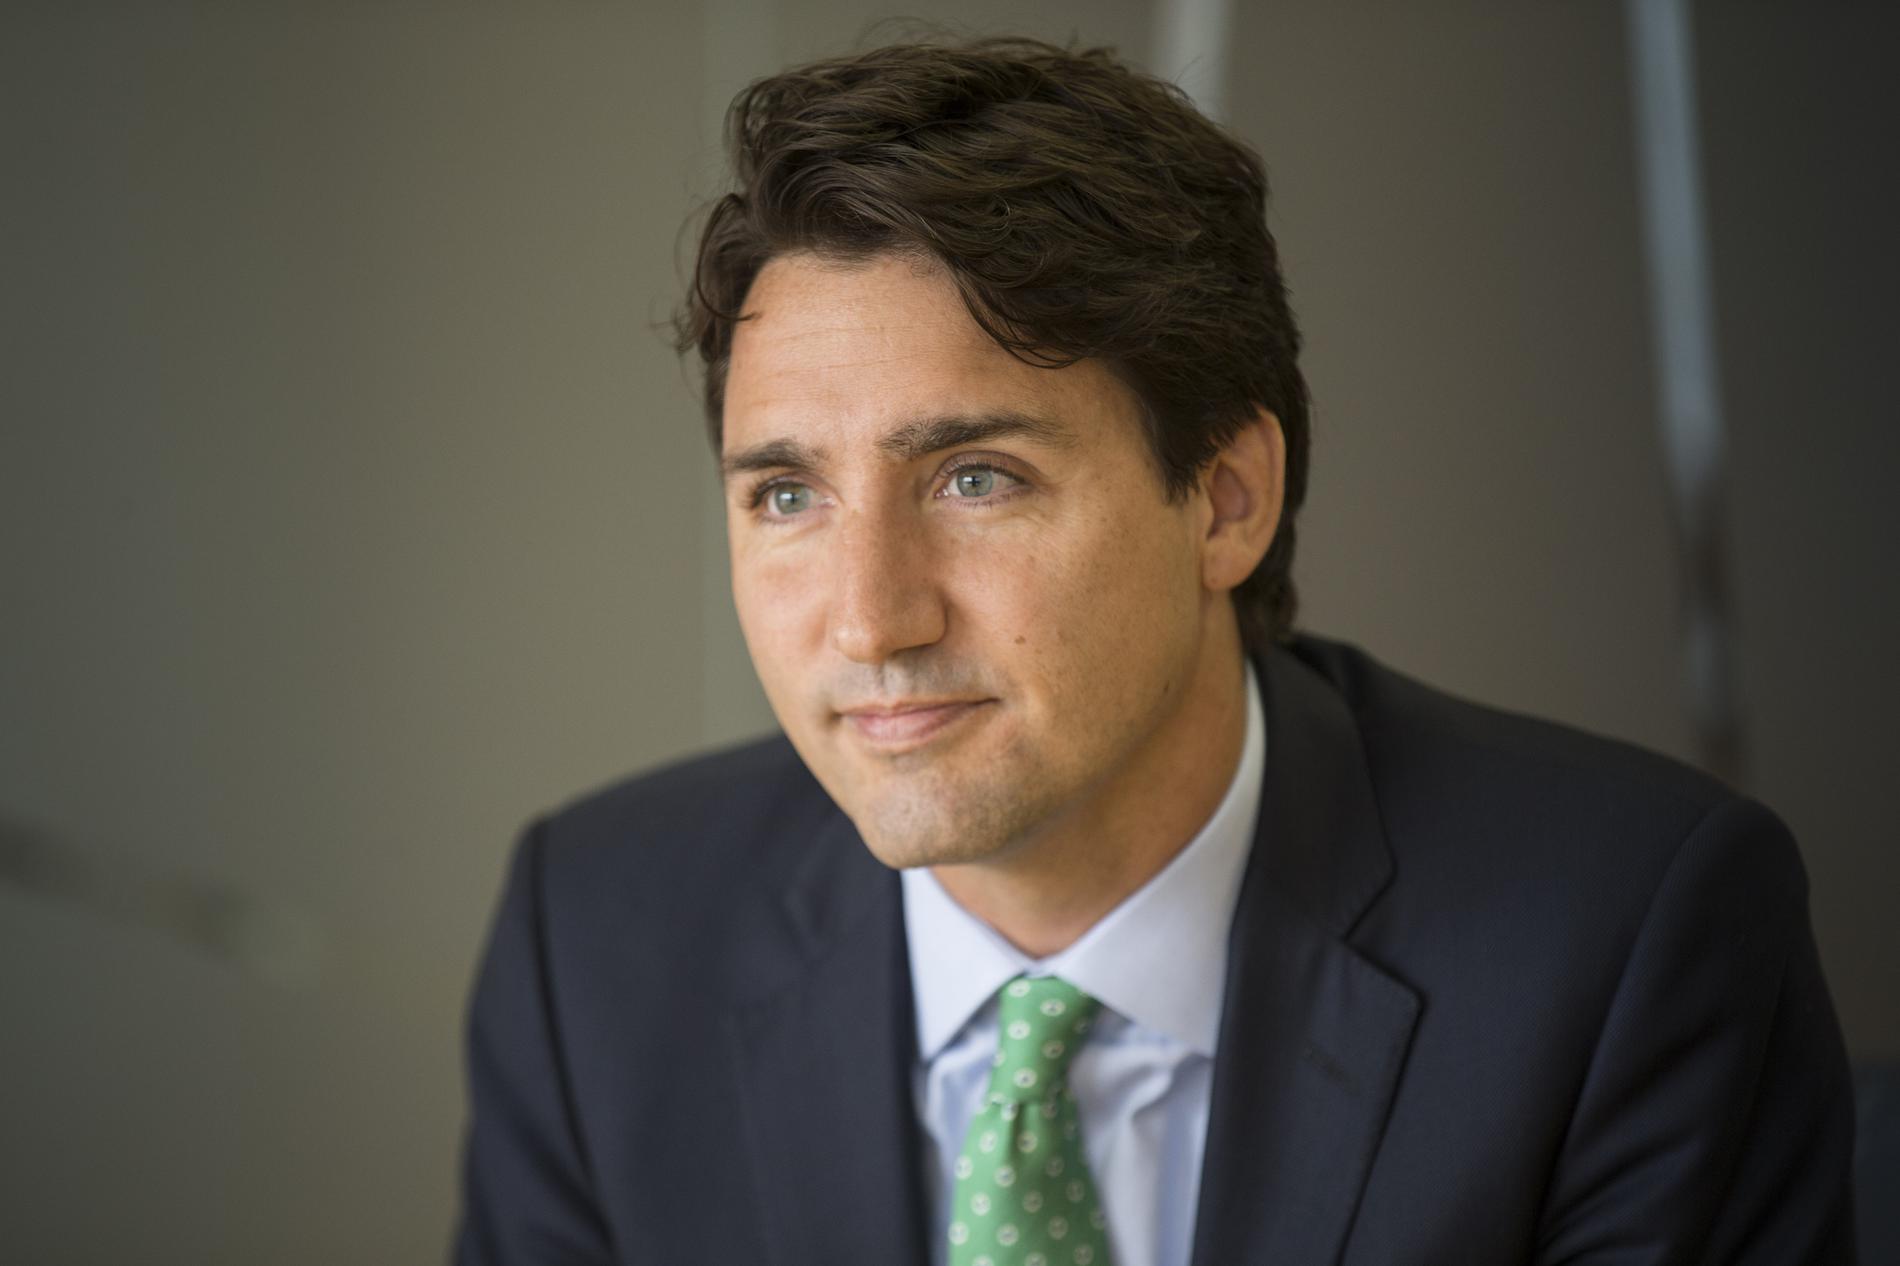 Le Premier ministre canadien a fait une grosse erreur